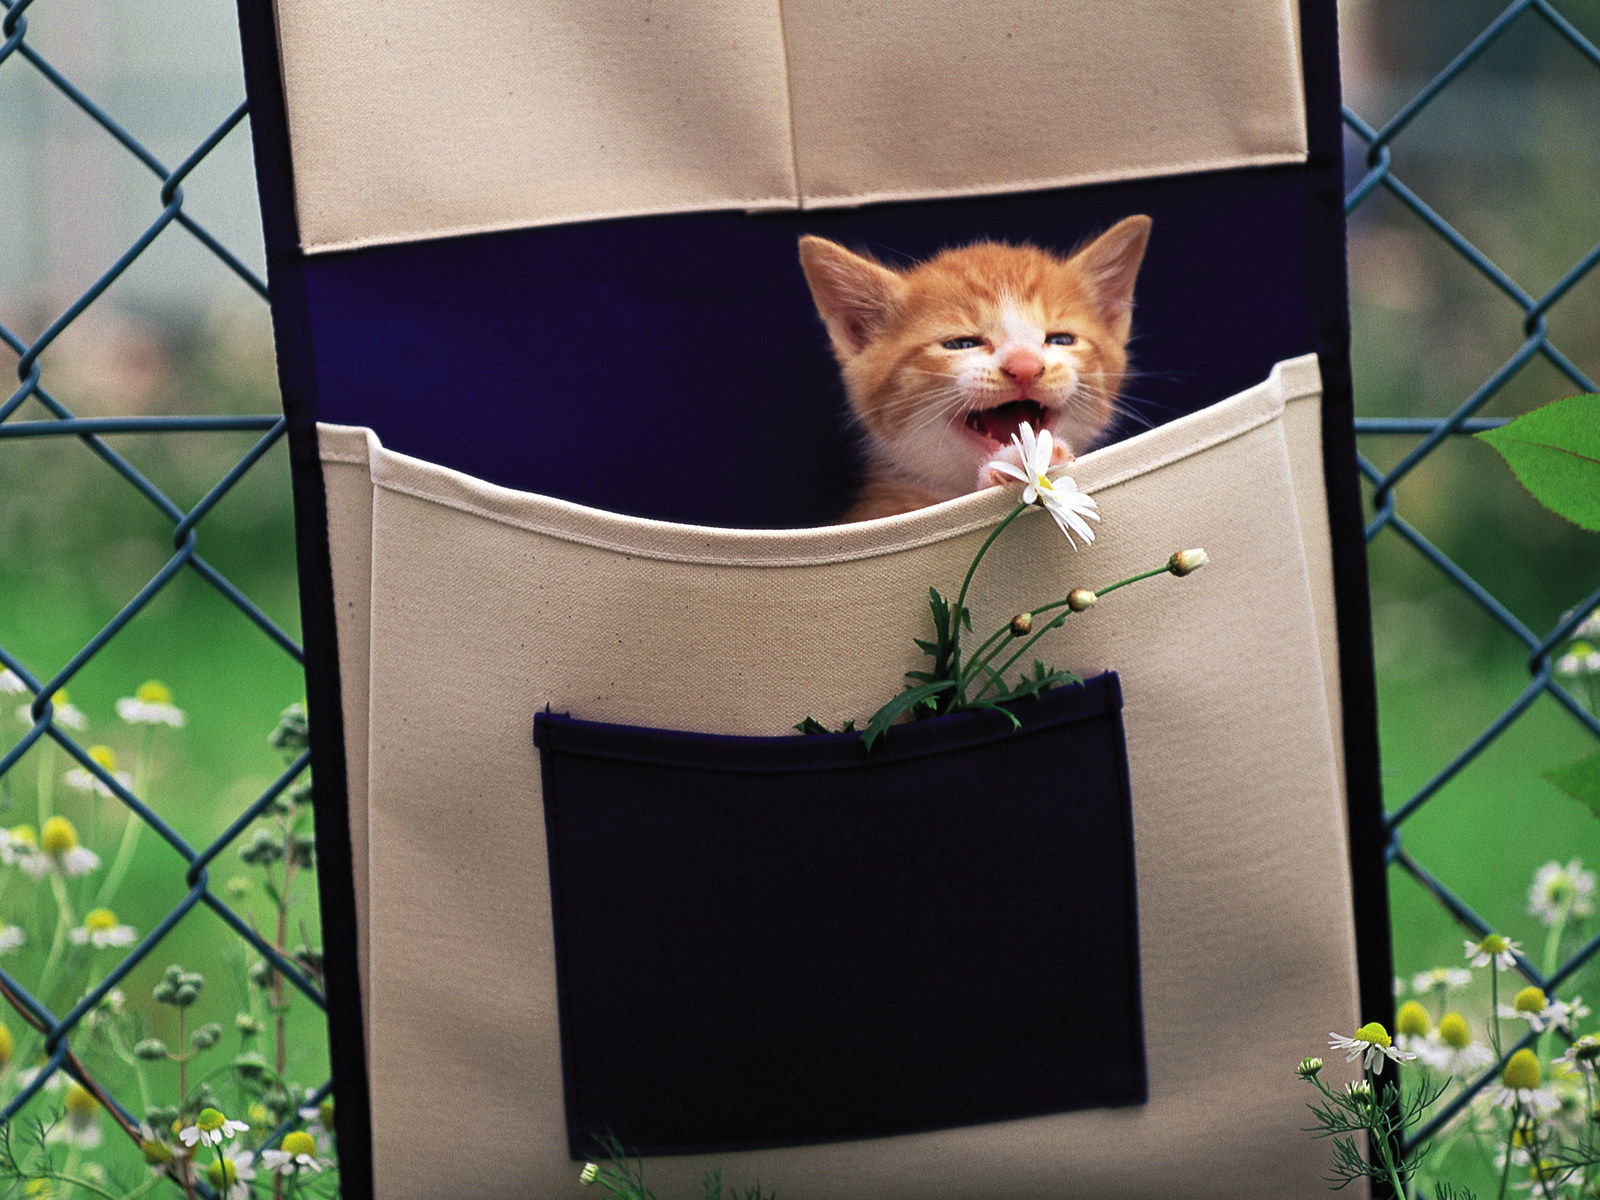 壁纸1600x1200 布袋里的小小黄猫咪图片壁纸壁纸 后院里的小猫咪壁纸 后院里的小猫咪图片 后院里的小猫咪素材 动物壁纸 动物图库 动物图片素材桌面壁纸